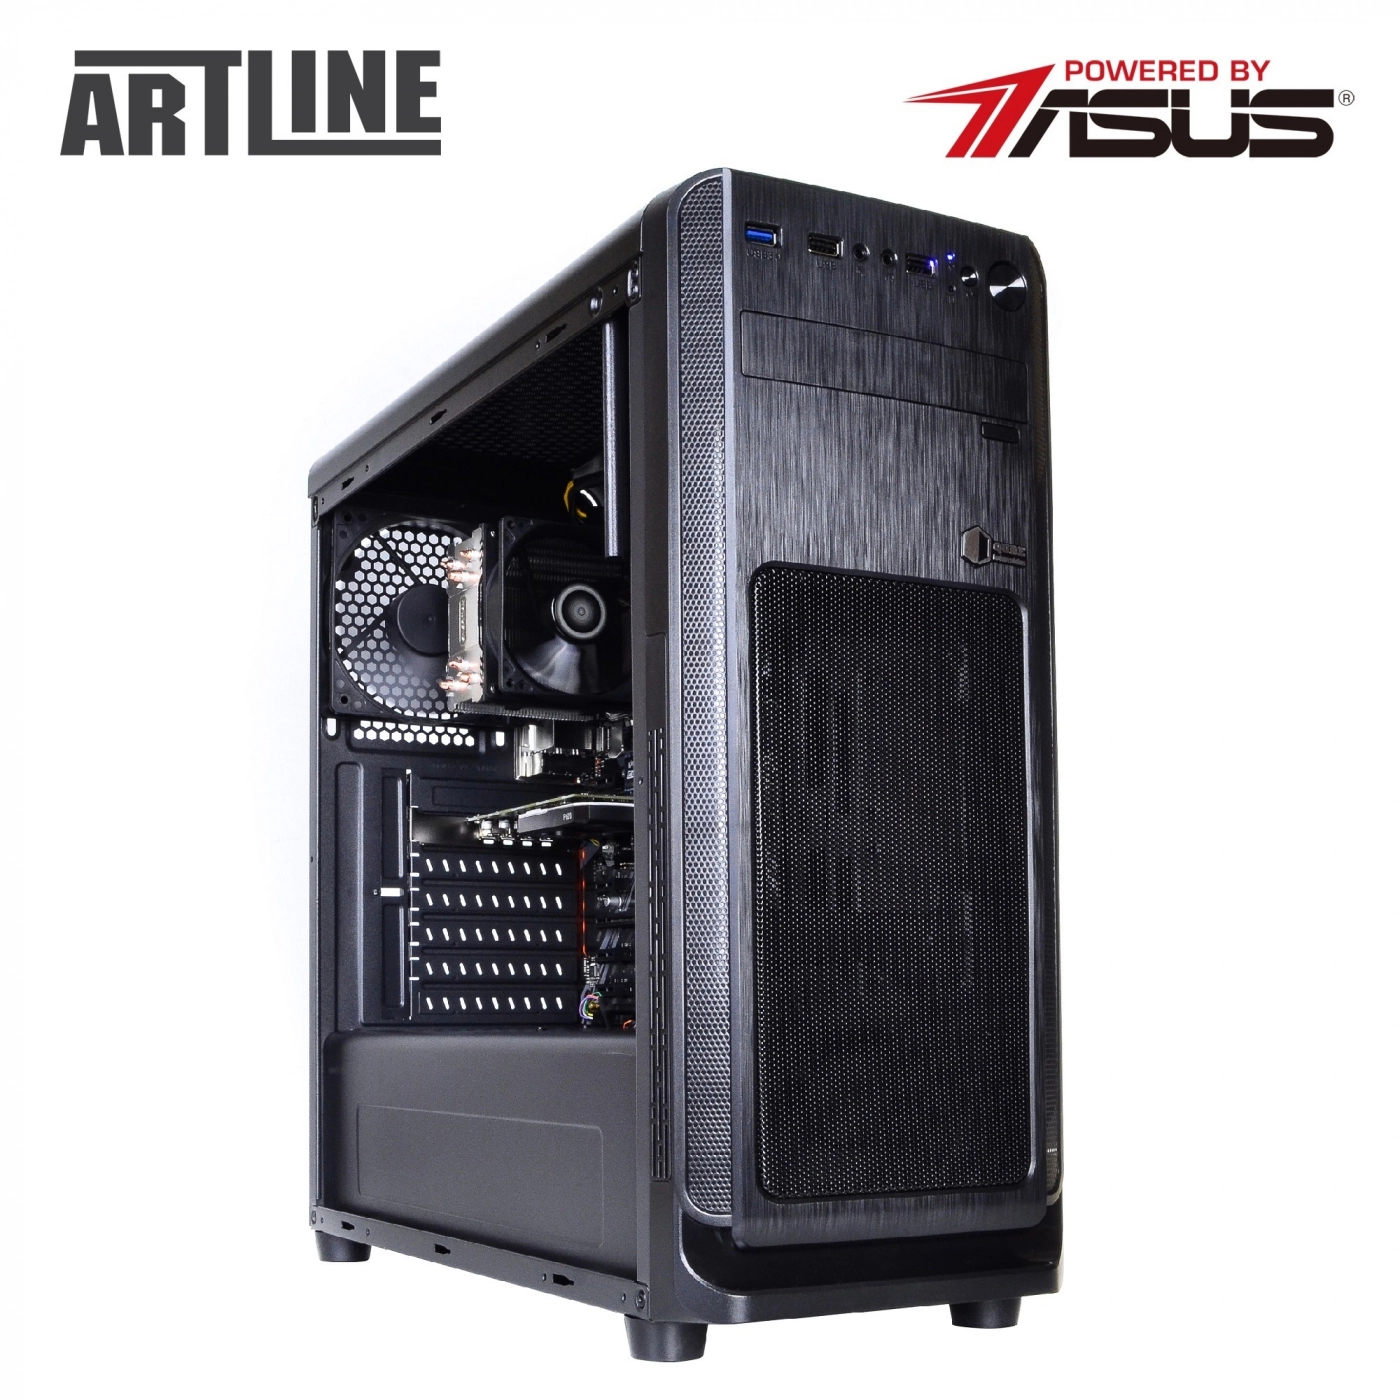 Купить Сервер ARTLINE Business T15v15 - фото 12